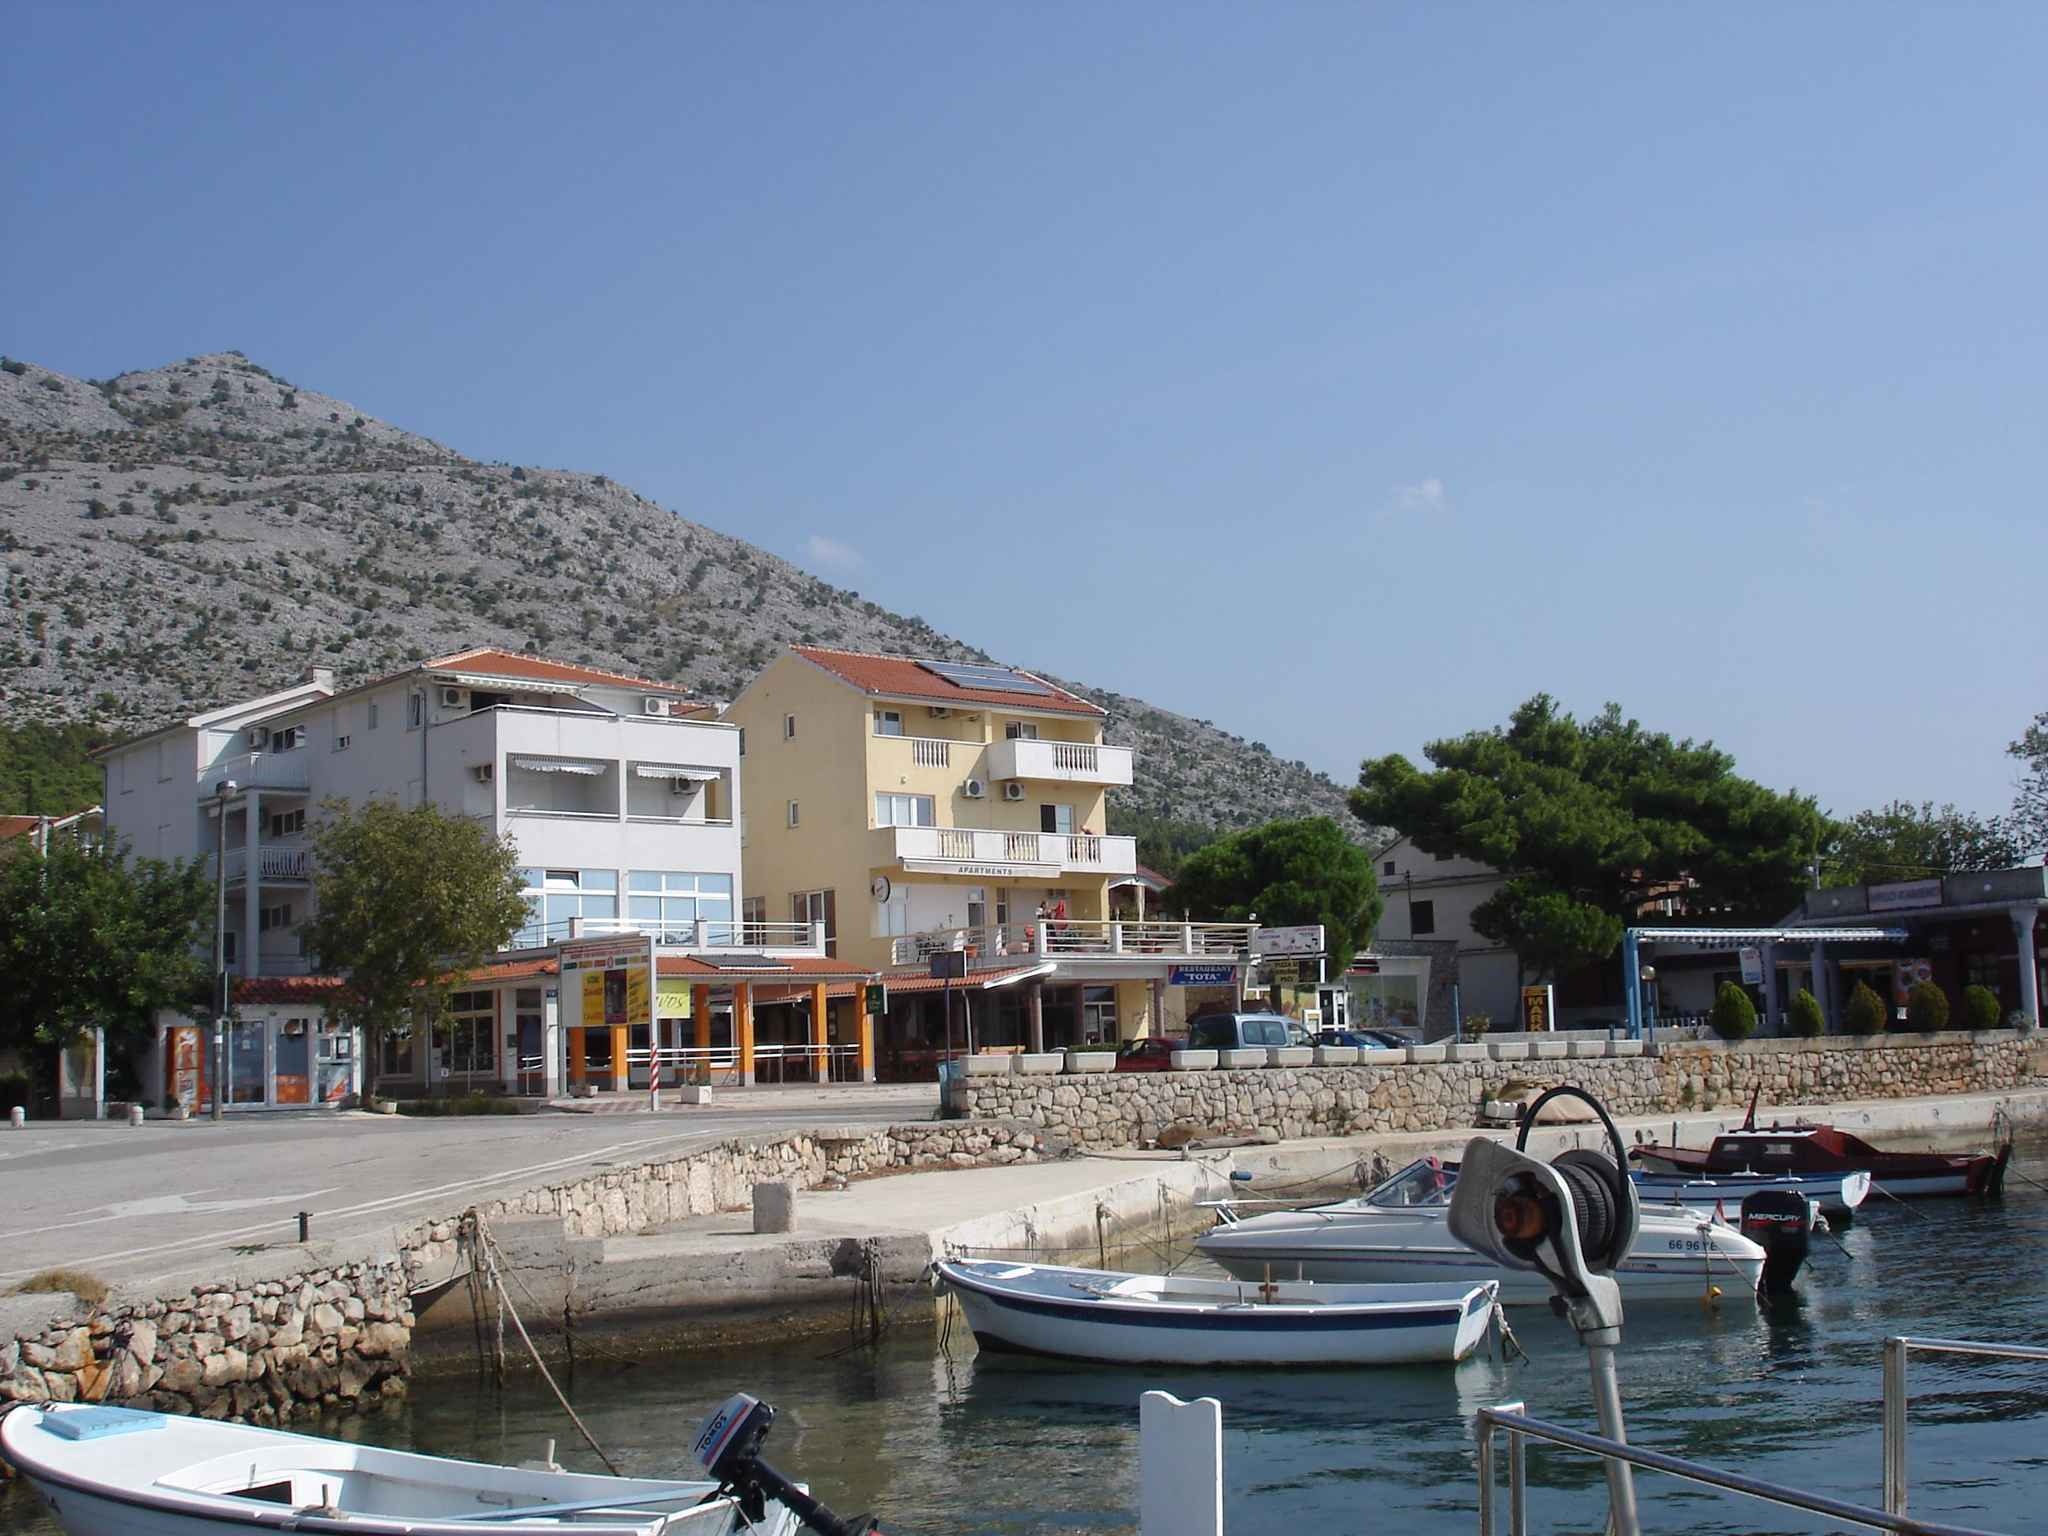 Adriatic Sea, Dal Par 040, Holiday apartment, Coastal retreat, 2050x1540 HD Desktop